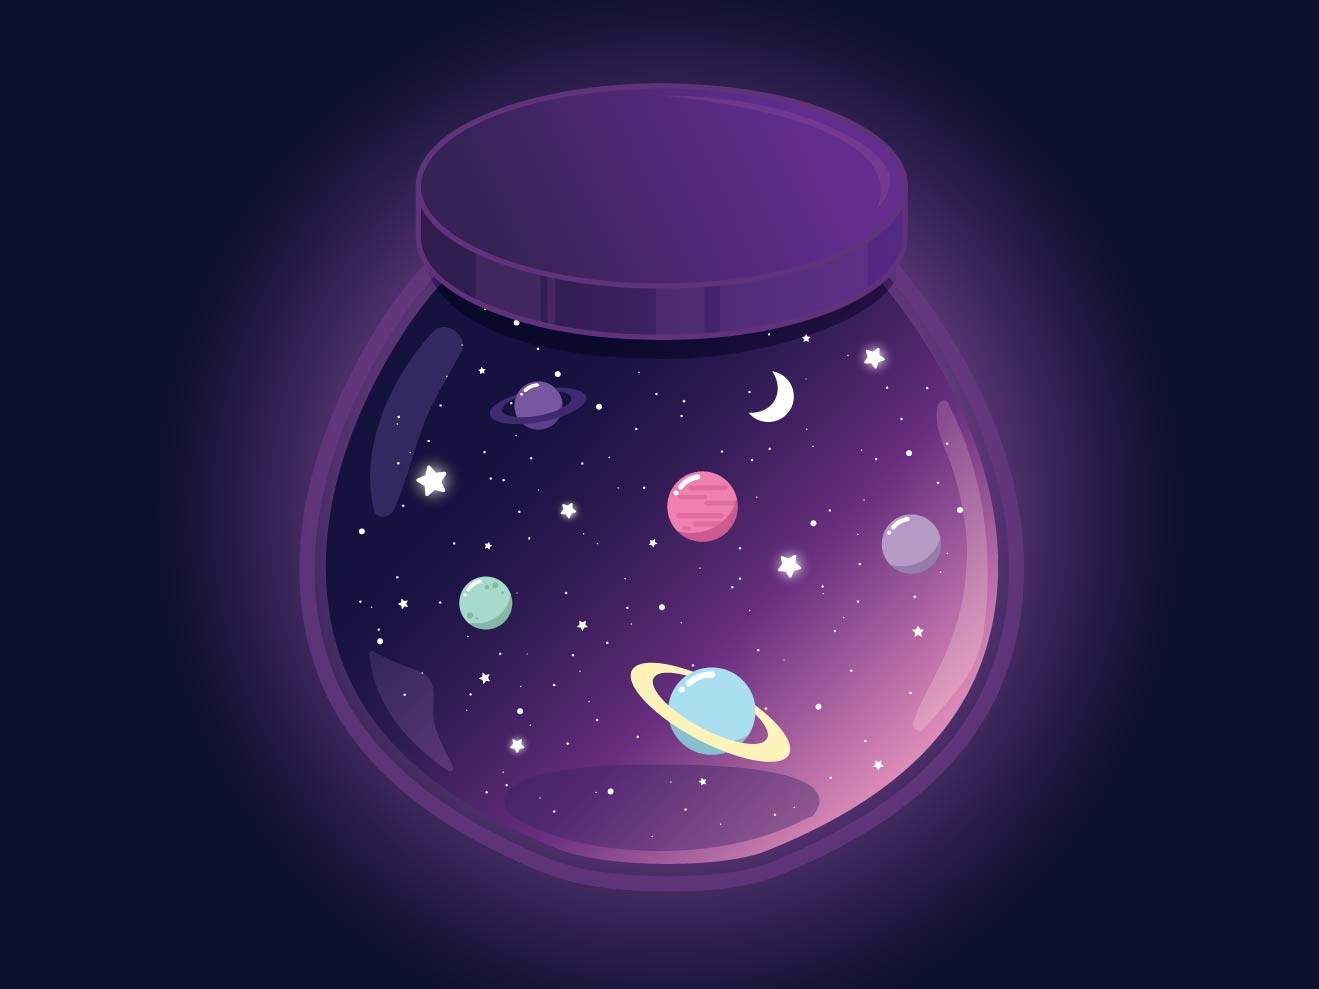 Space Jar by ELYsART on Dribbble